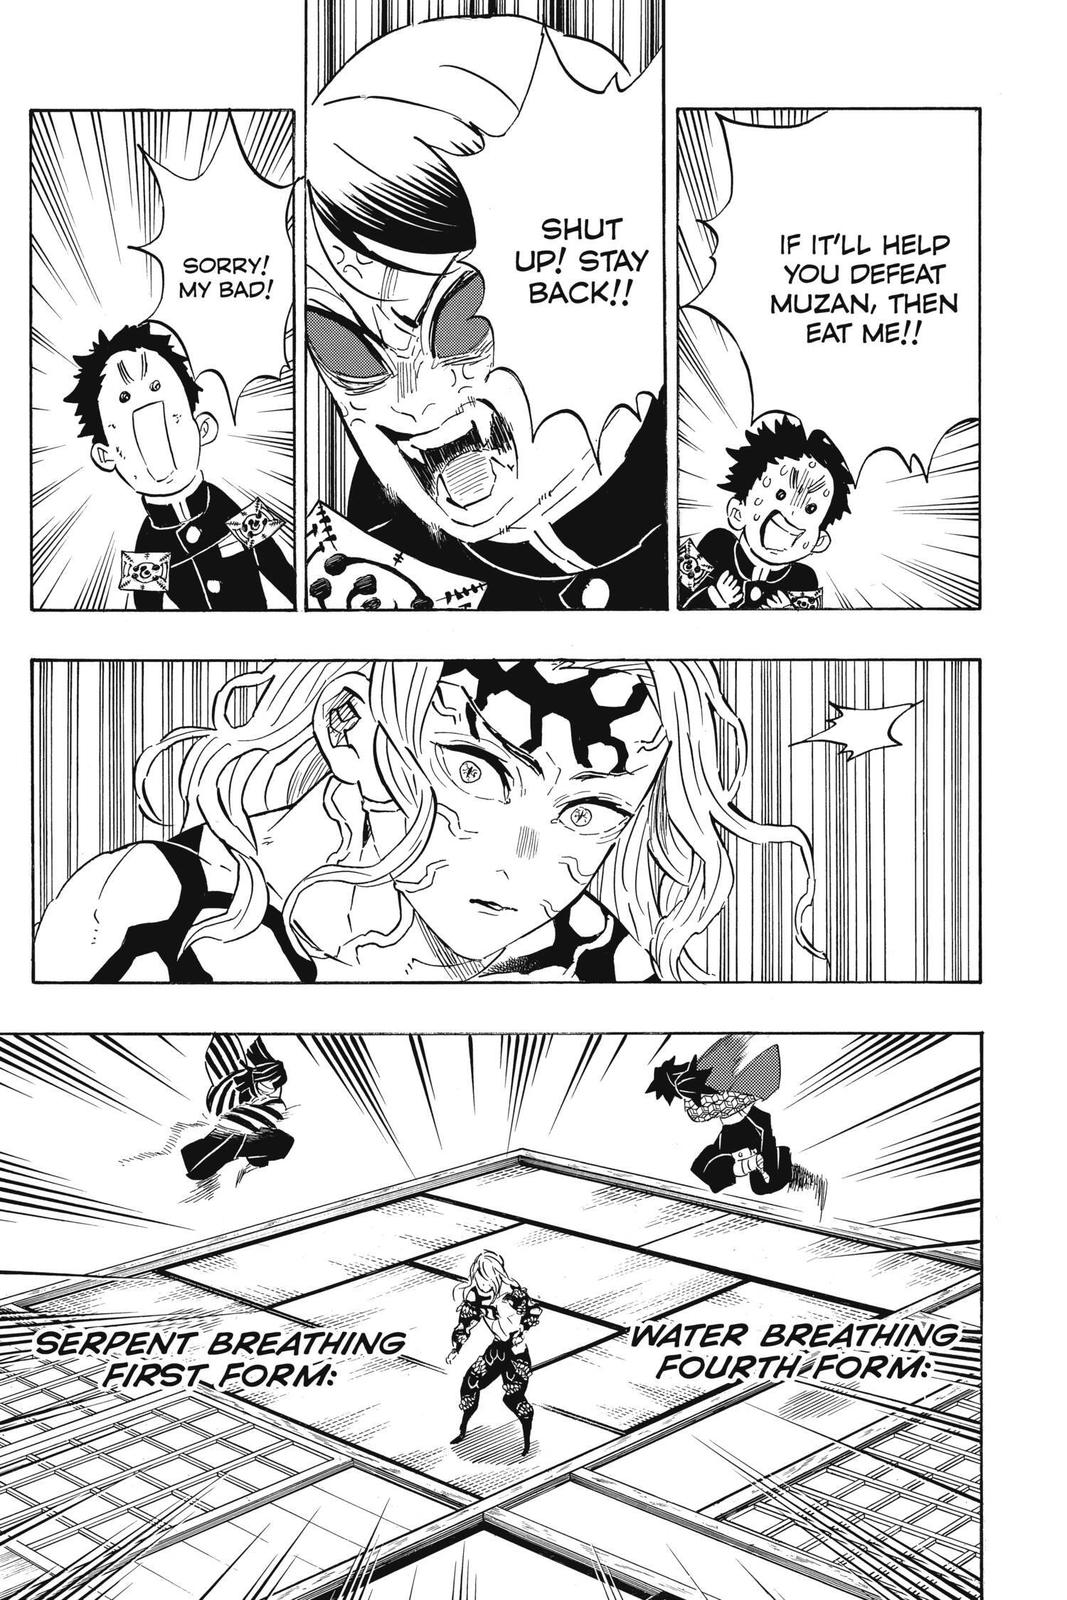 Demon Slayer Manga Manga Chapter - 183 - image 5